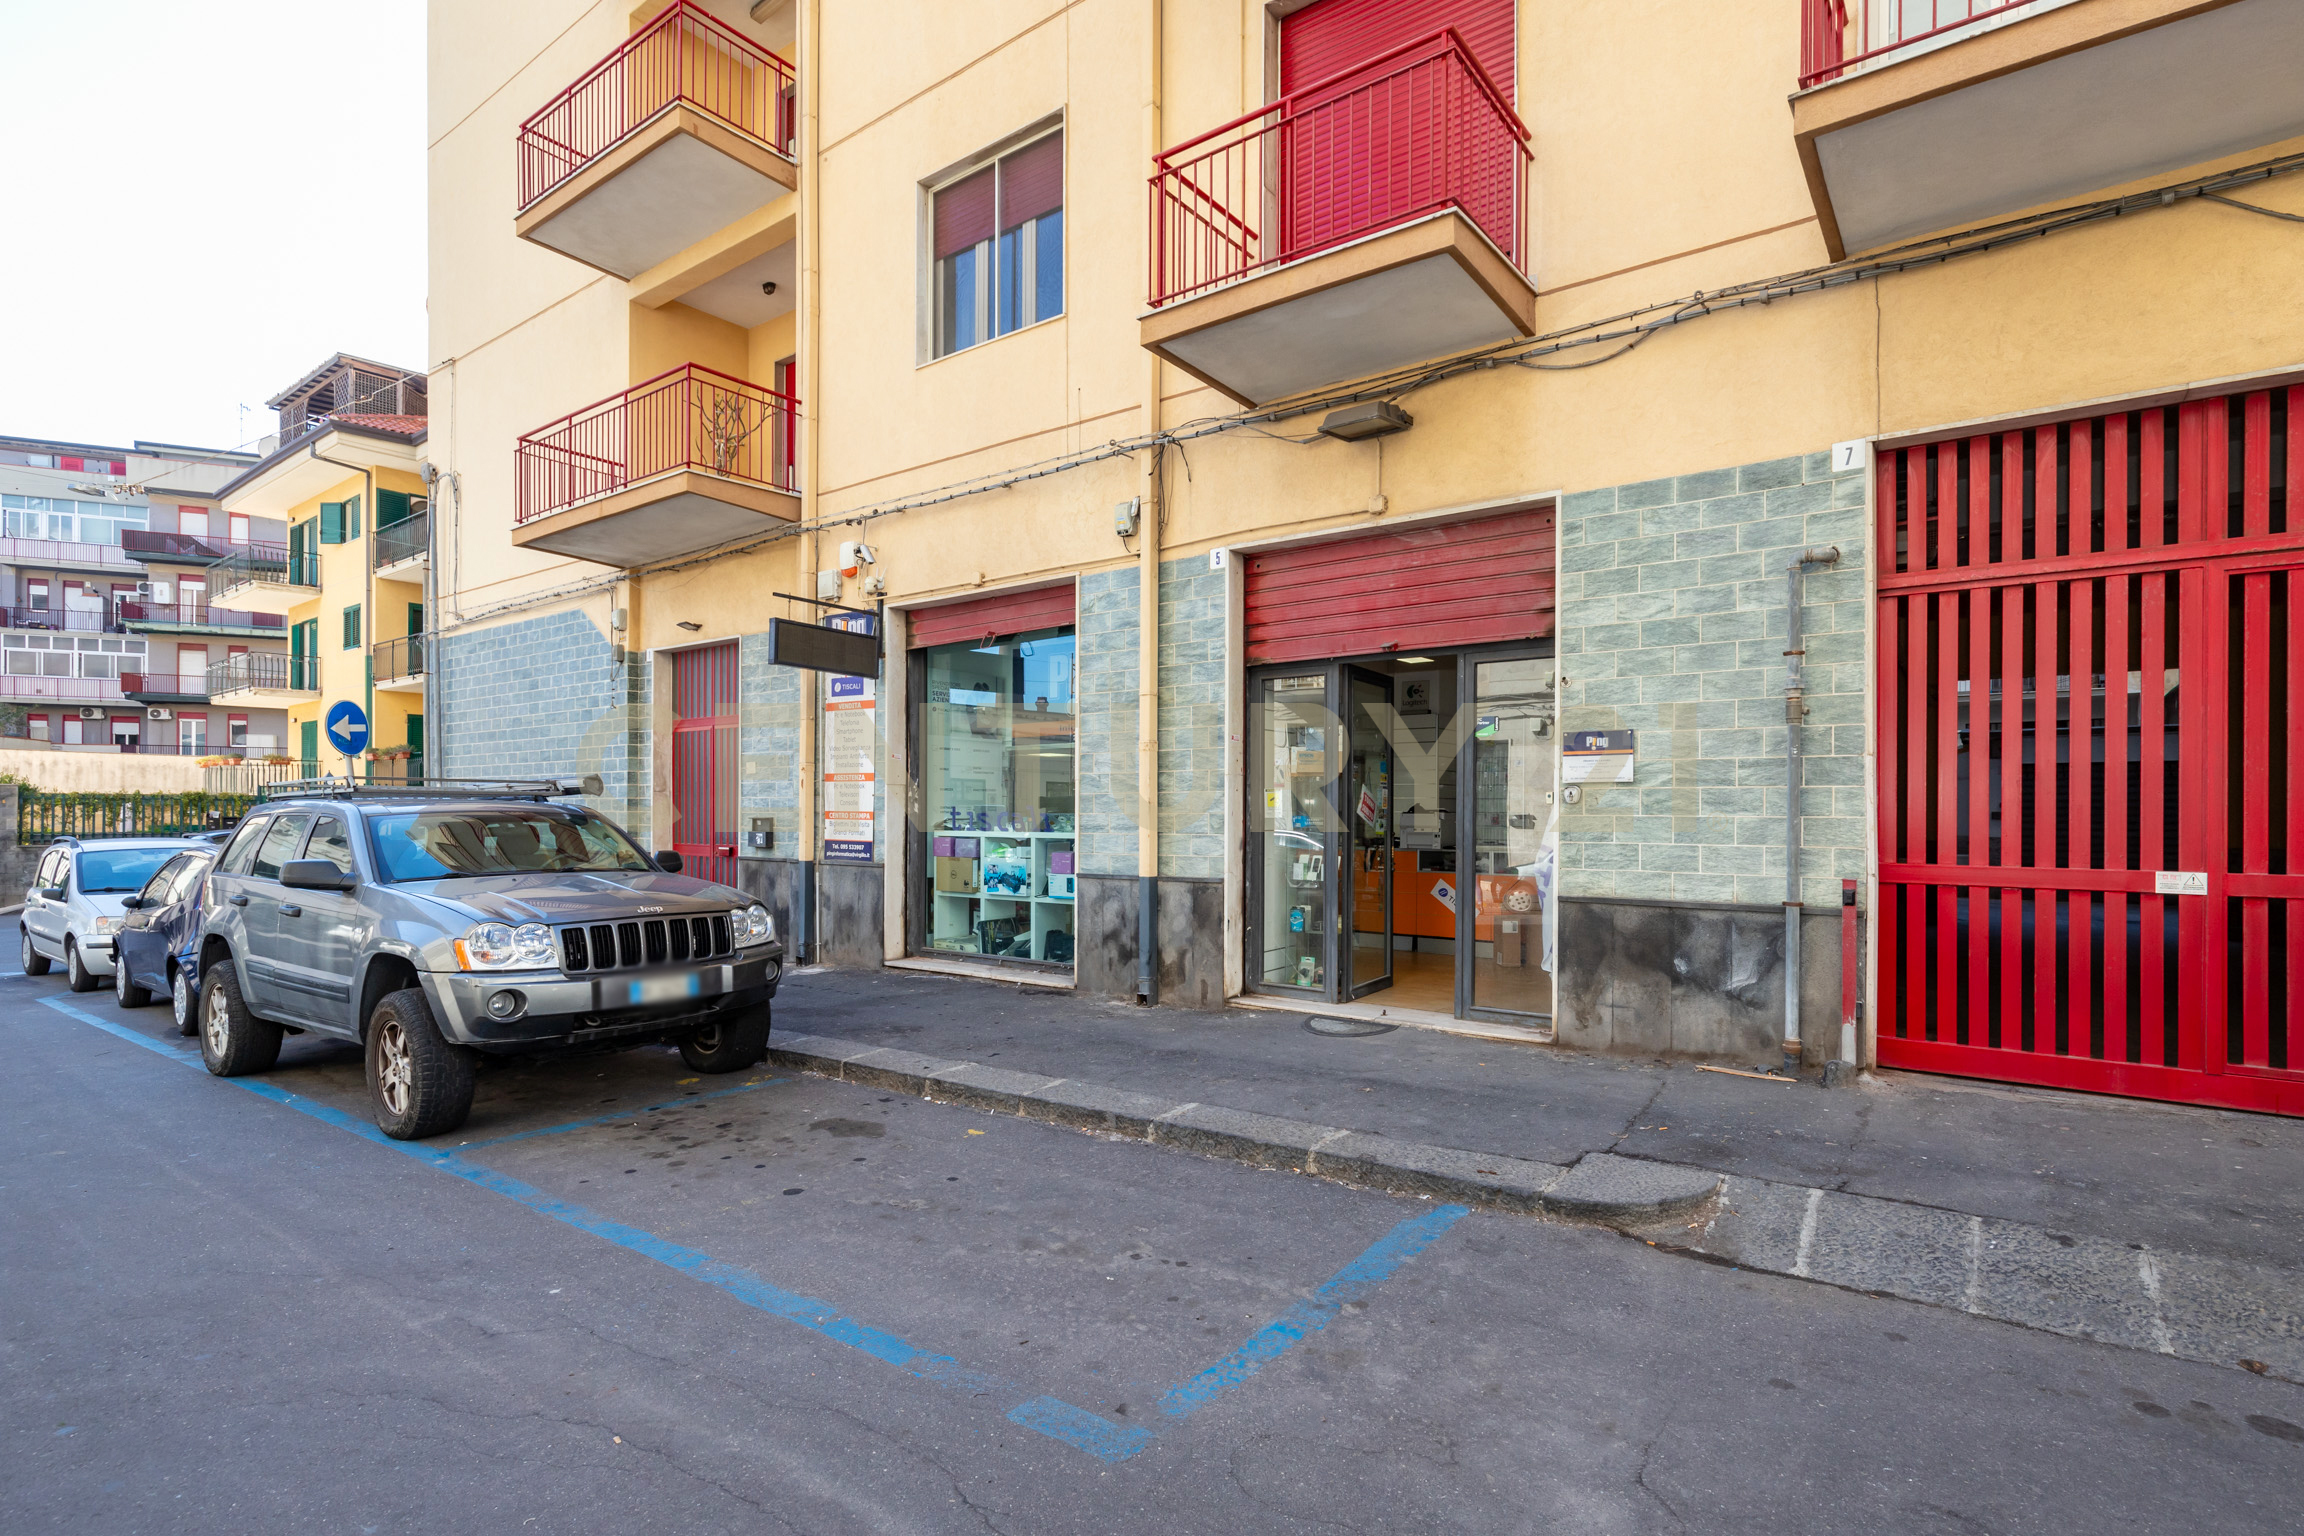 Locale commerciale in vendita in via tolmezzo 5, Catania